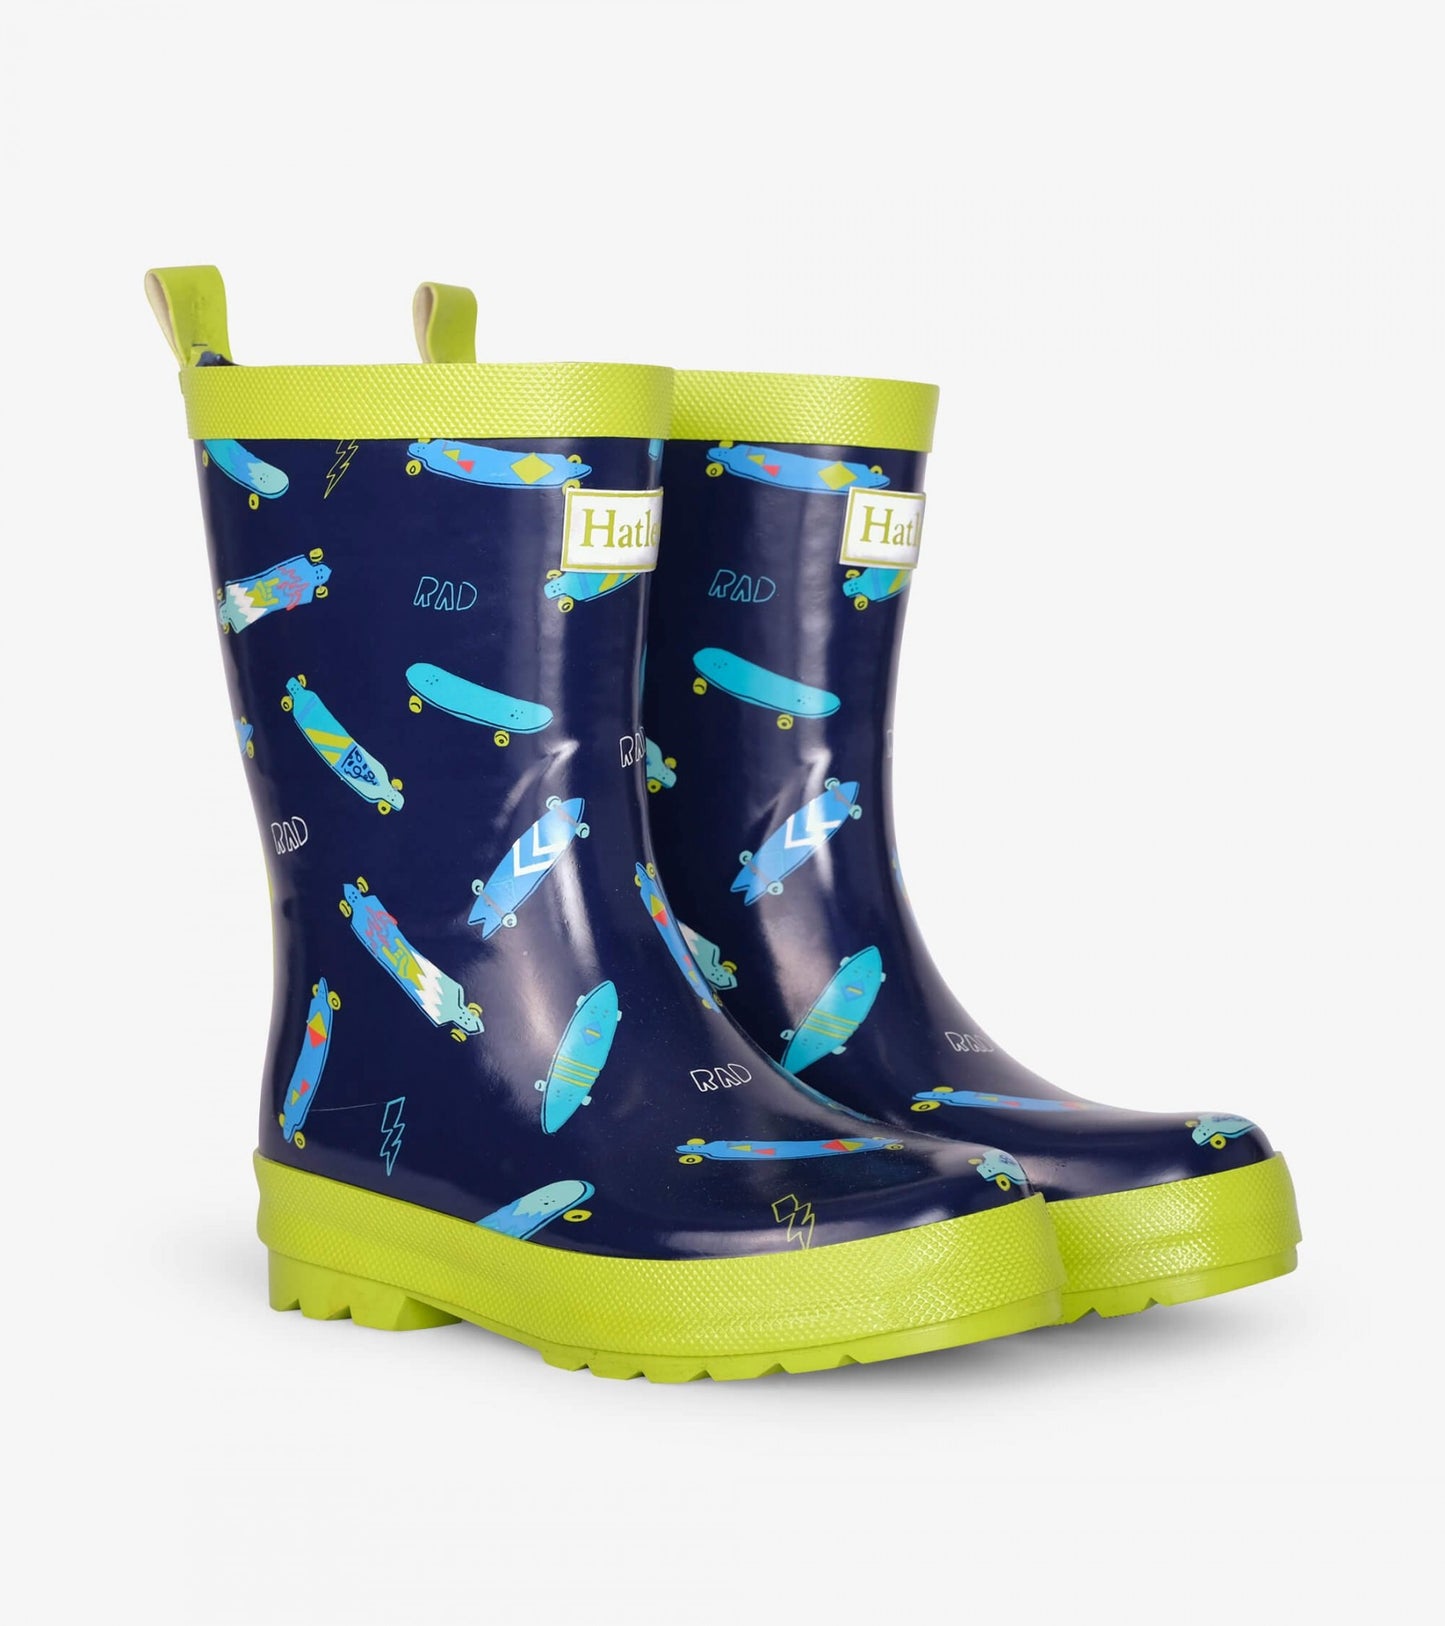 Rad longboards shiny rain boots